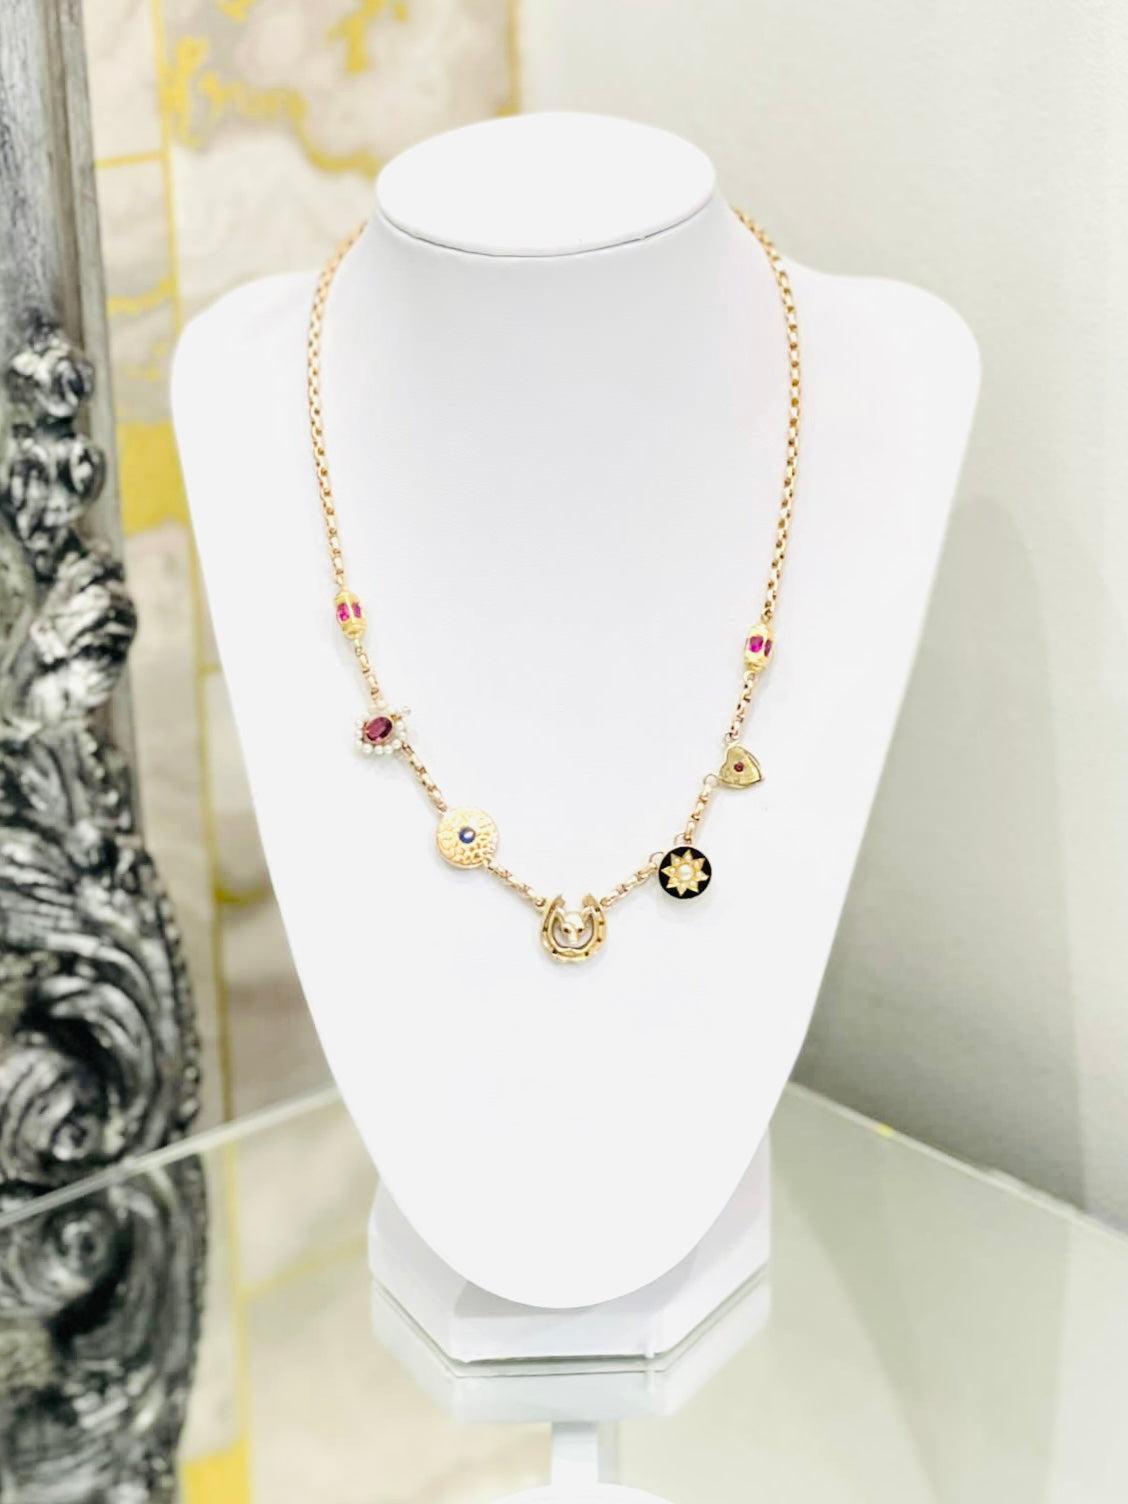 Viktorianische Charm-Halskette aus 15 Karat Gold mit Rubinen, Saphiren und Perlen

Mehrere Charms sind an einer Gliederkette befestigt. Charms mit alten Punzierungen in einer Mischung aus 15ct,  9 Karat Gold und luxuriöse Edelsteine:
- Fuchs mit